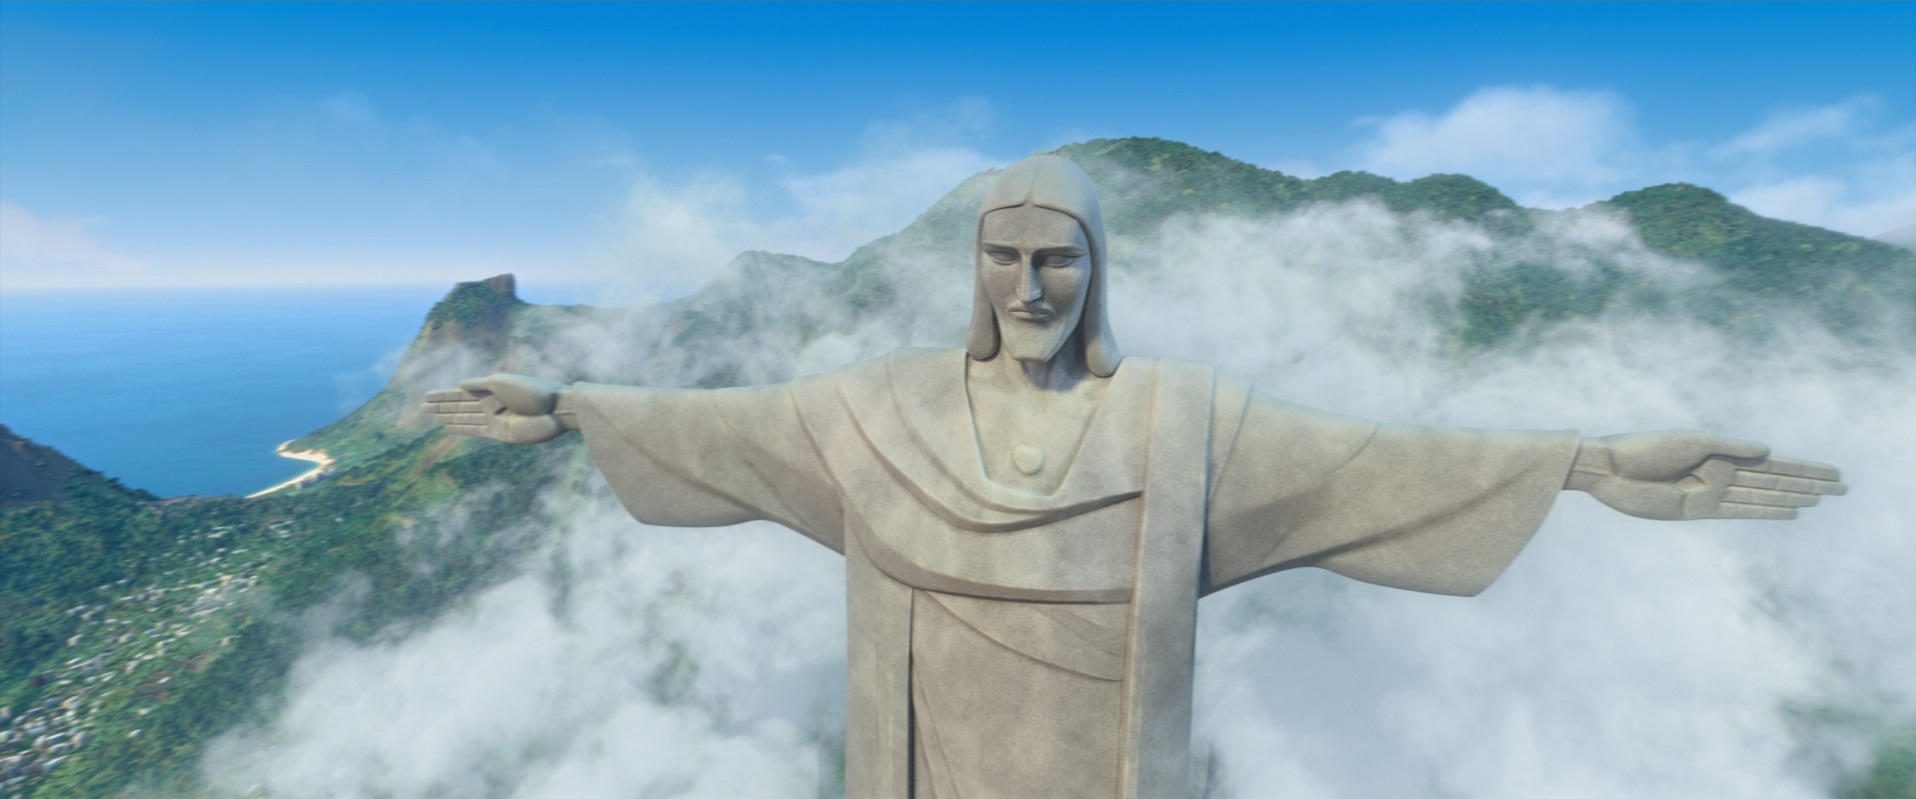 Christ the Redeemer | Rio Wiki | Fandom powered by Wikia1916 x 799